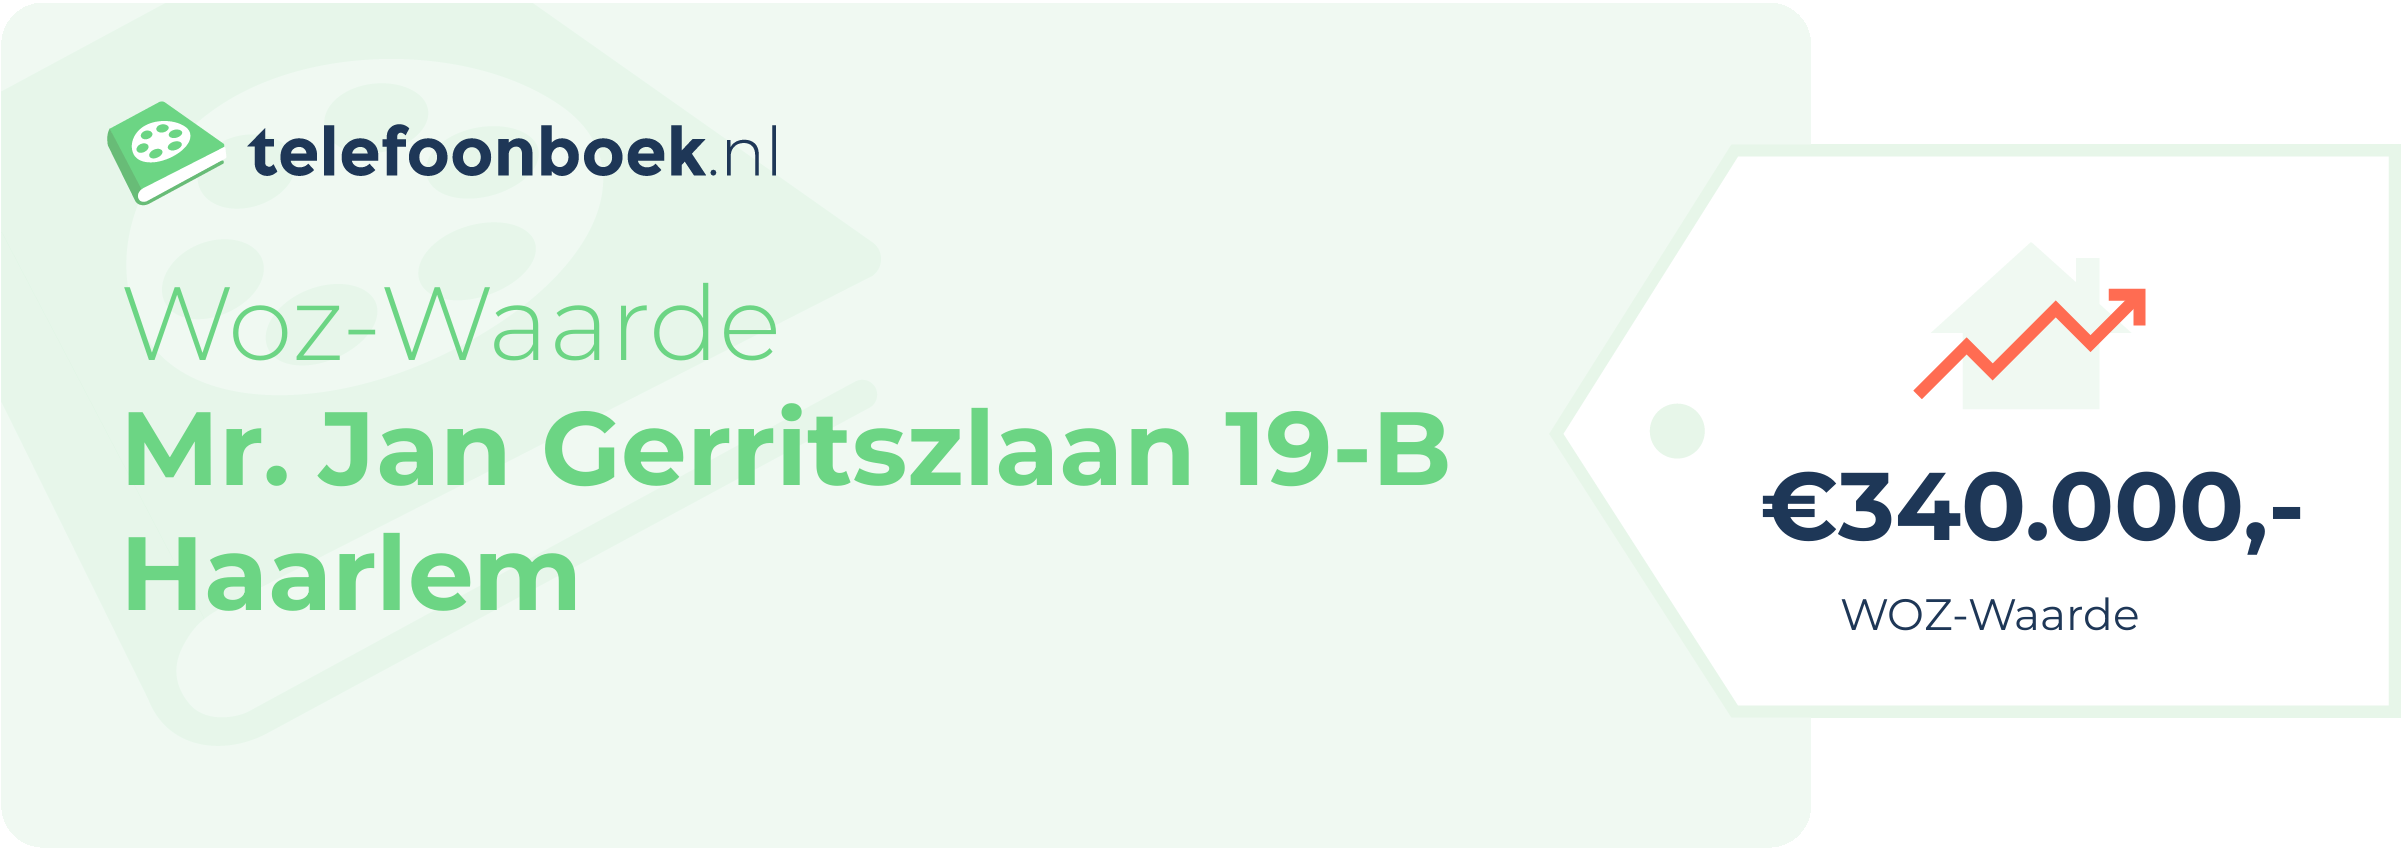 WOZ-waarde Mr. Jan Gerritszlaan 19-B Haarlem